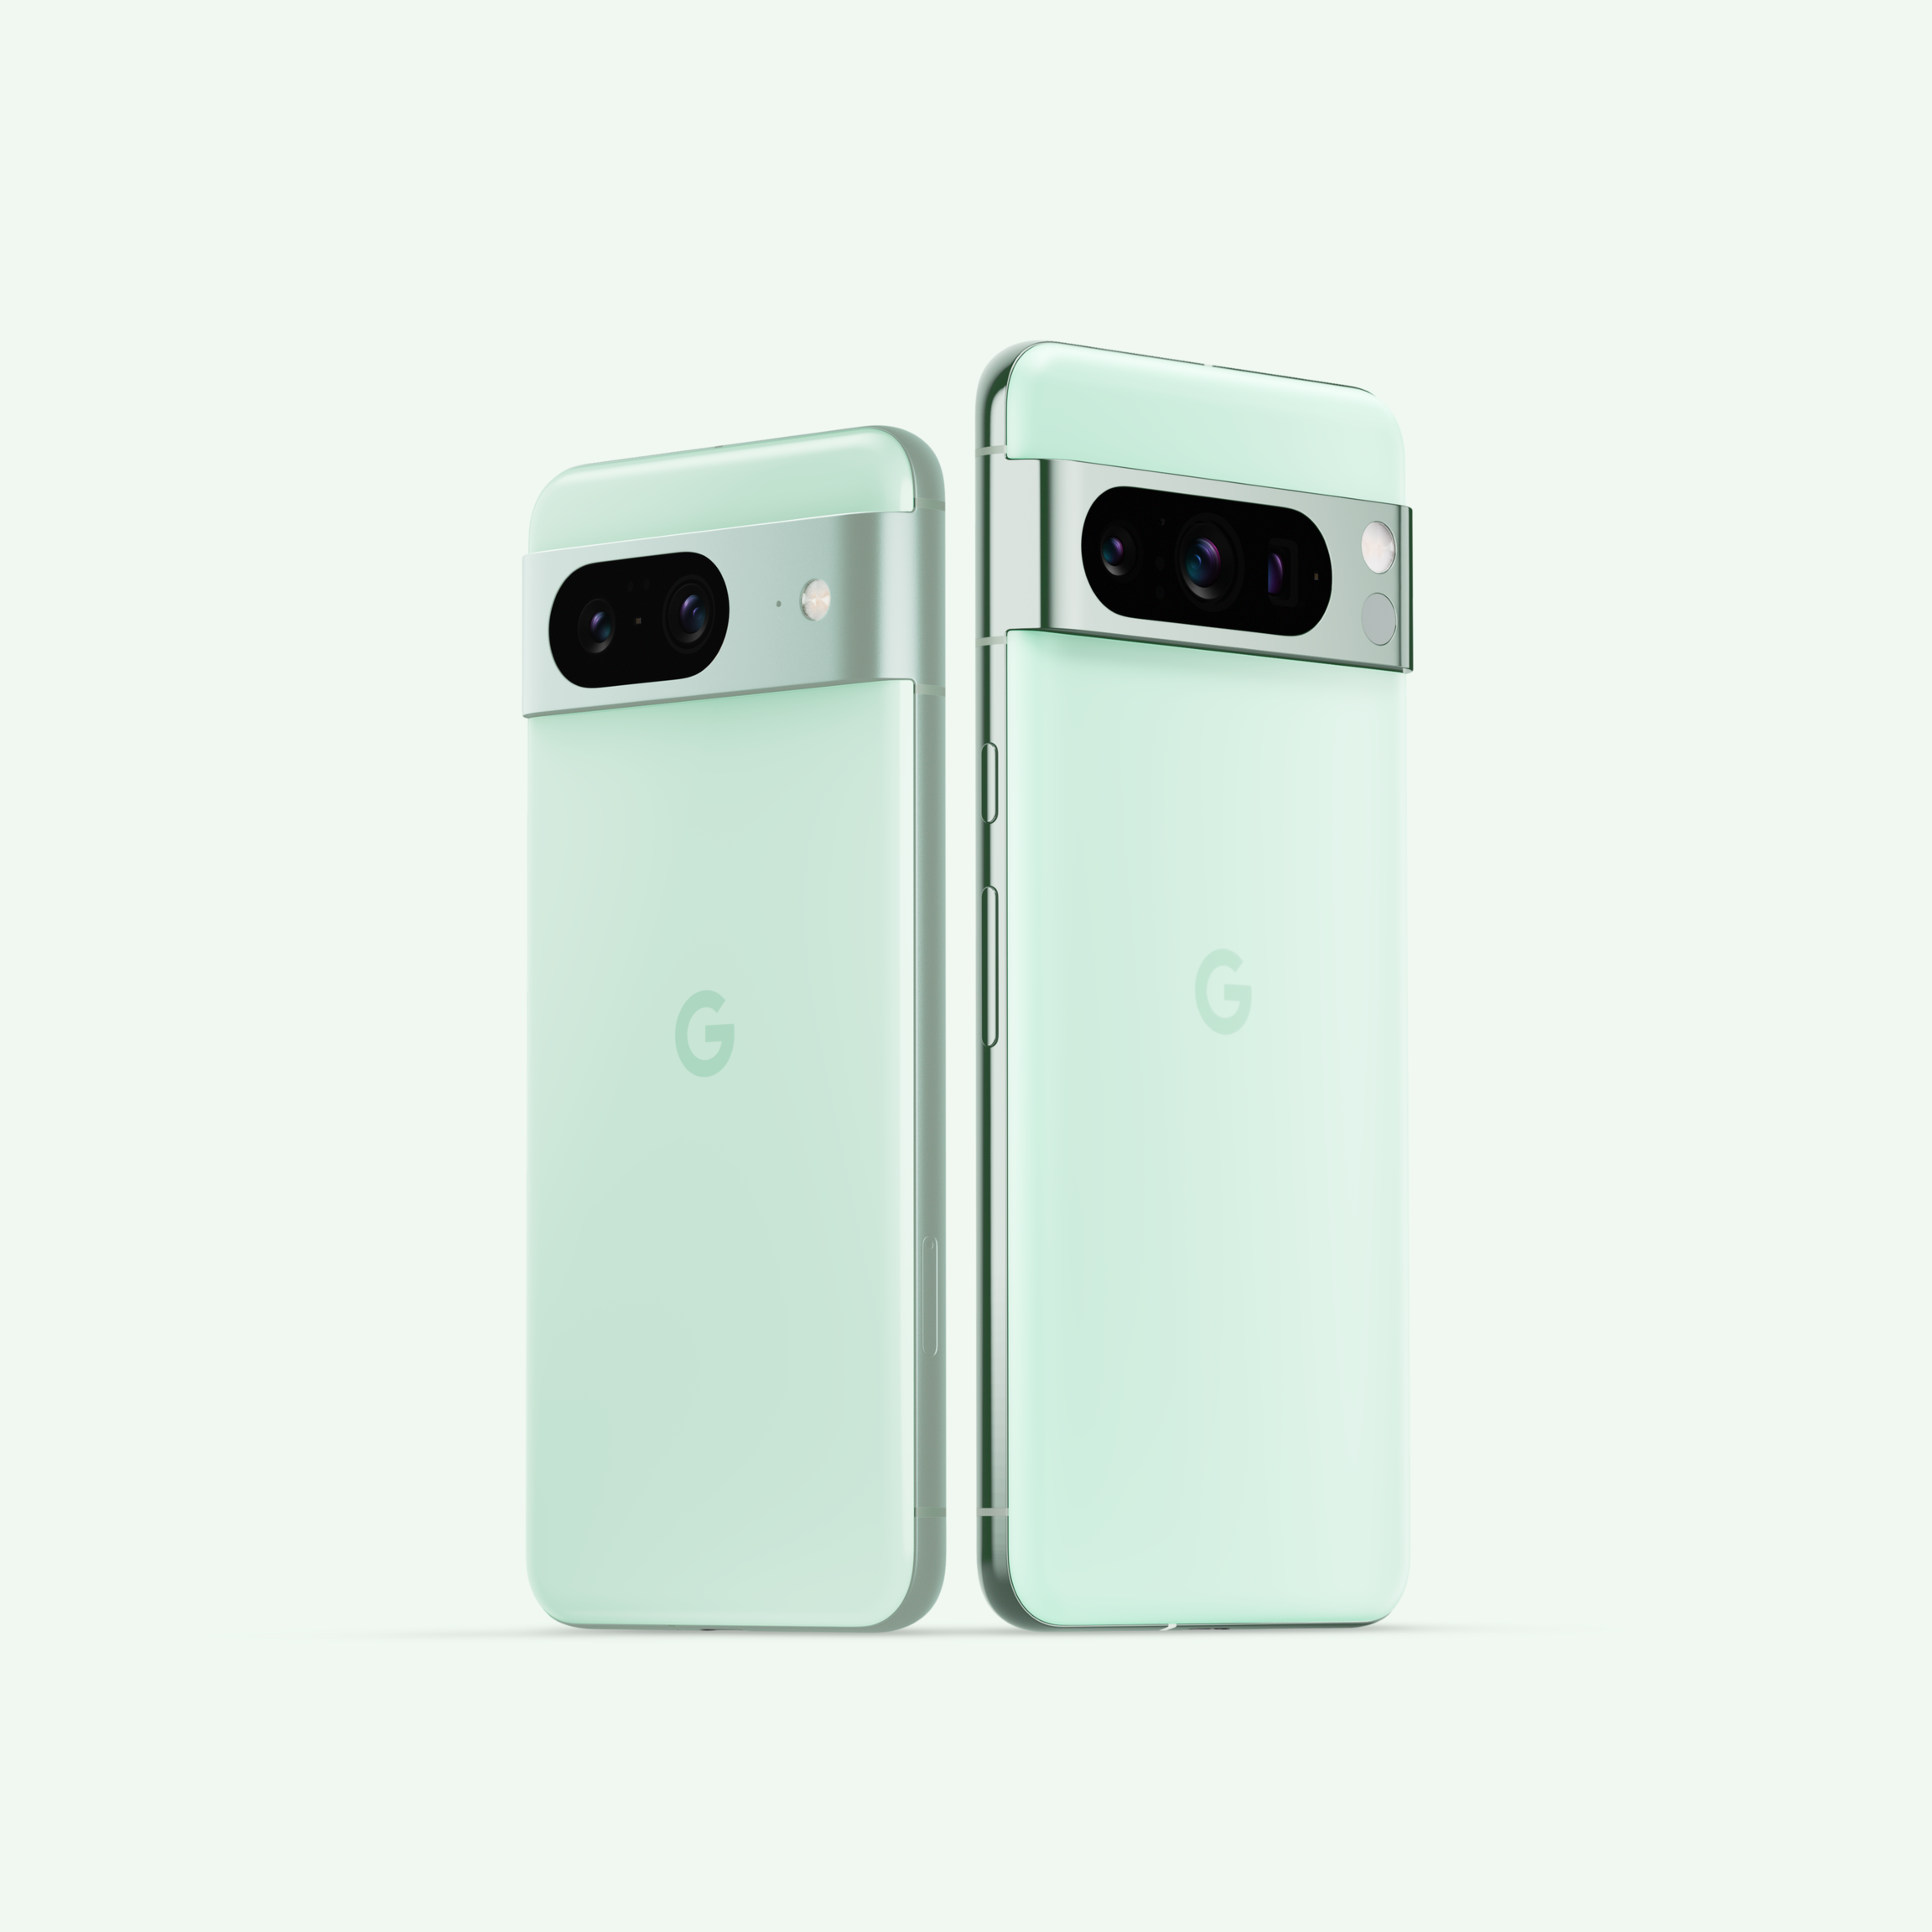 两部薄荷色 Pixel 8 手机。